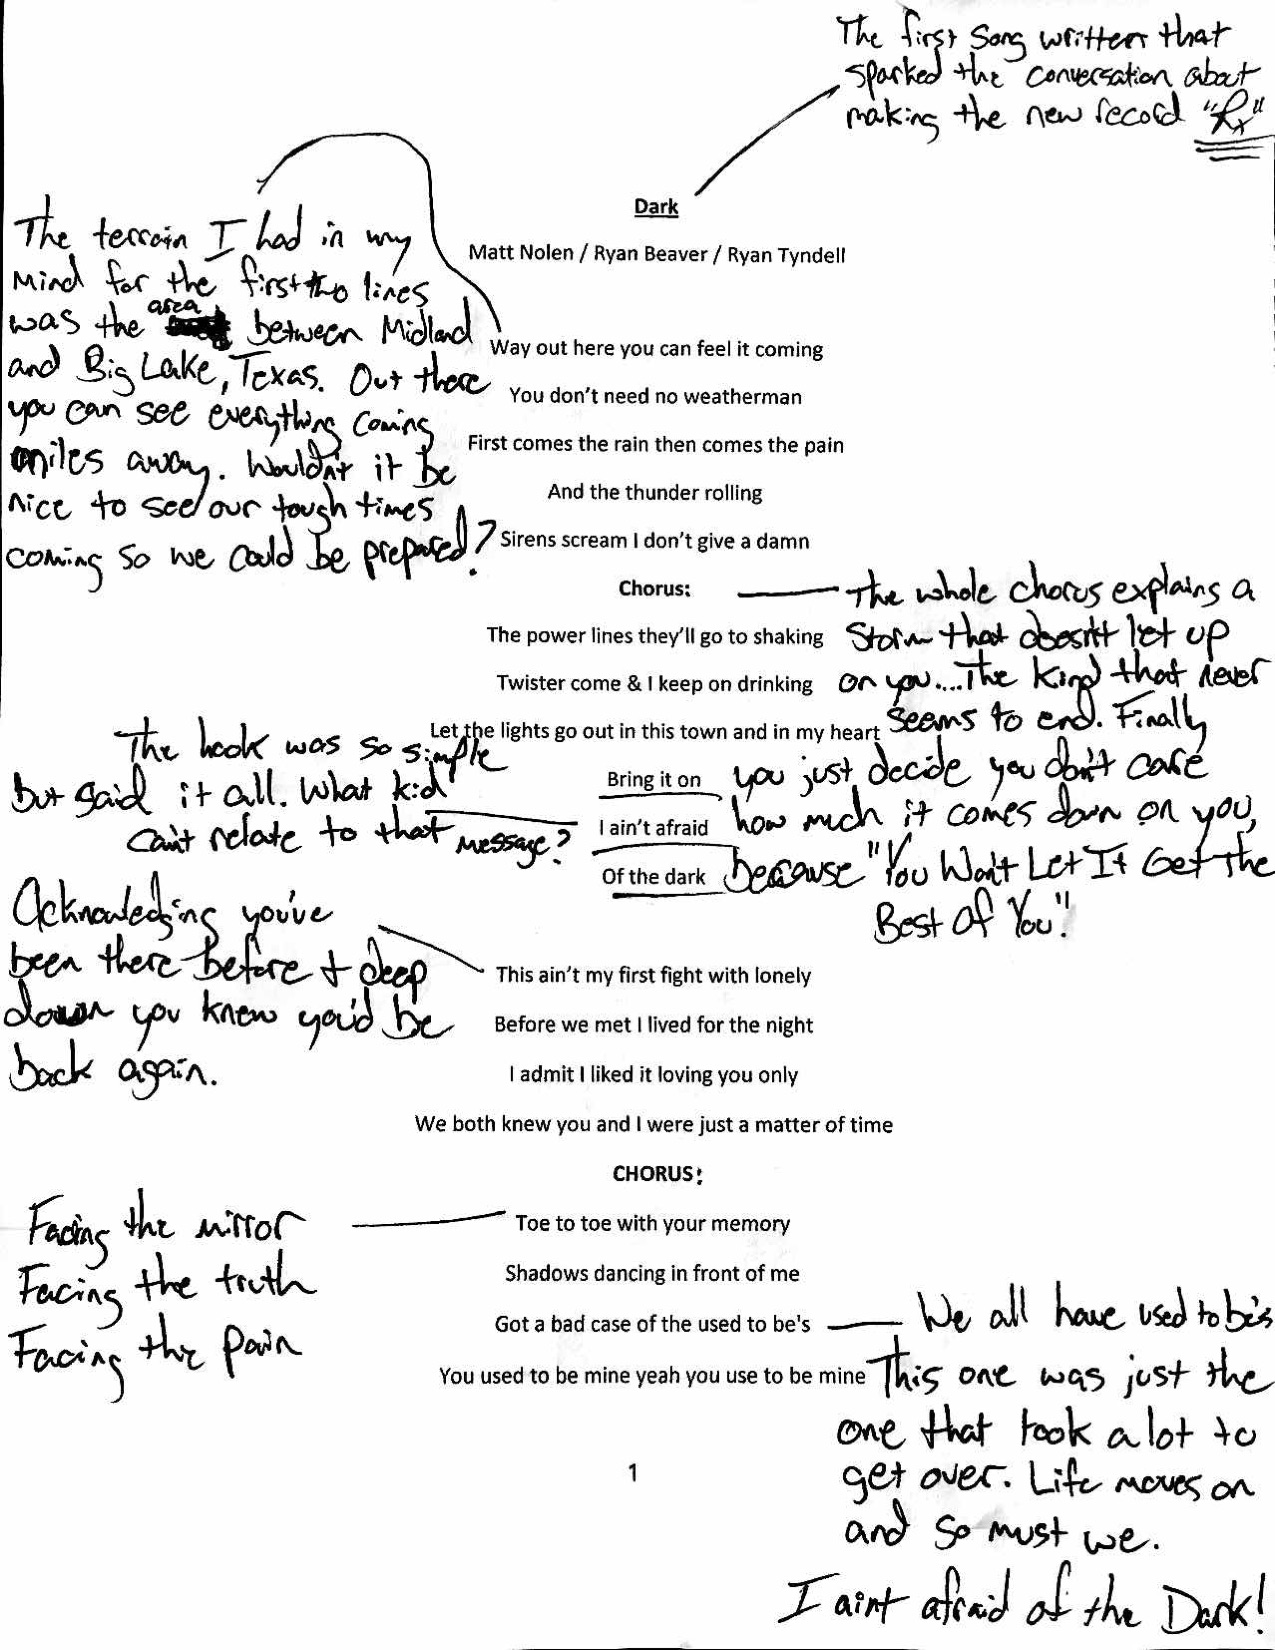 Hand Annotated Lyrics: Ryan Beaver's "Dark" - The Shotgun Seat